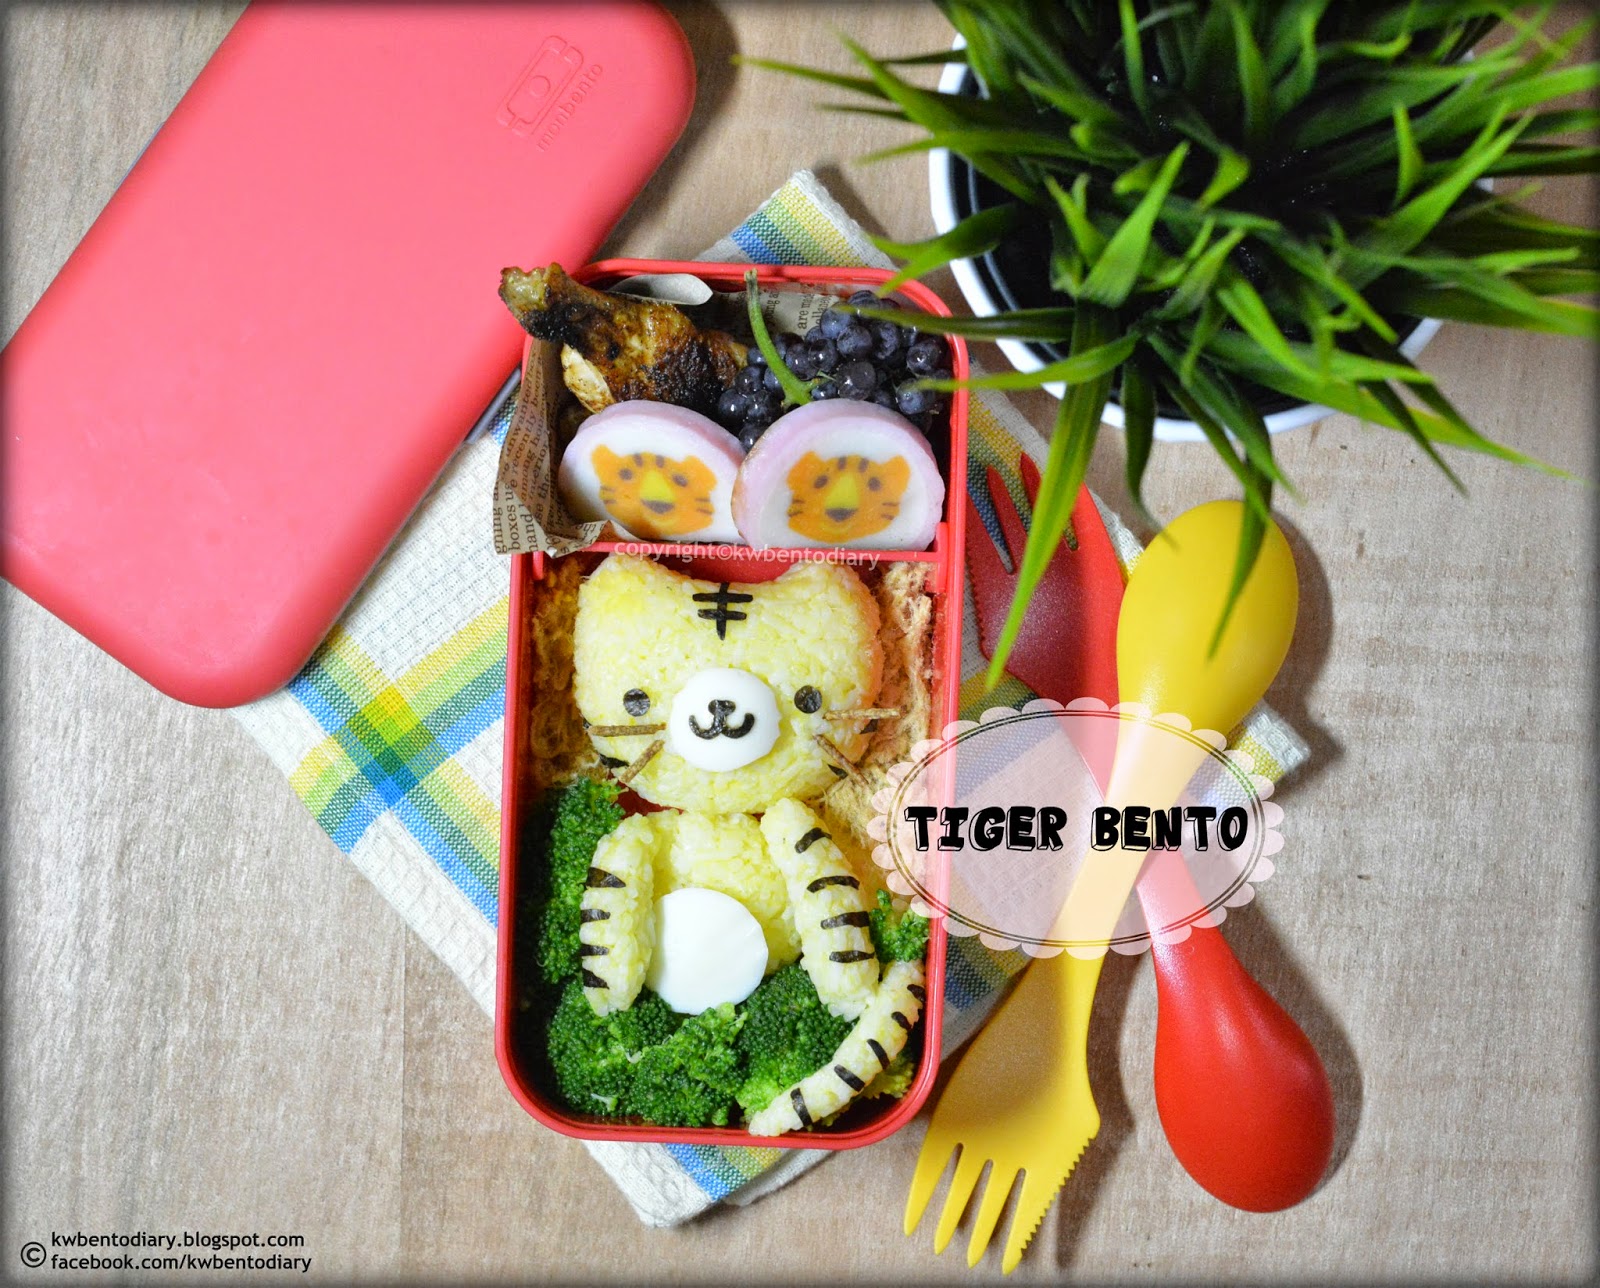 Karenwee's Bento Diary: Bento2014#Oct01~Kuromi Bento